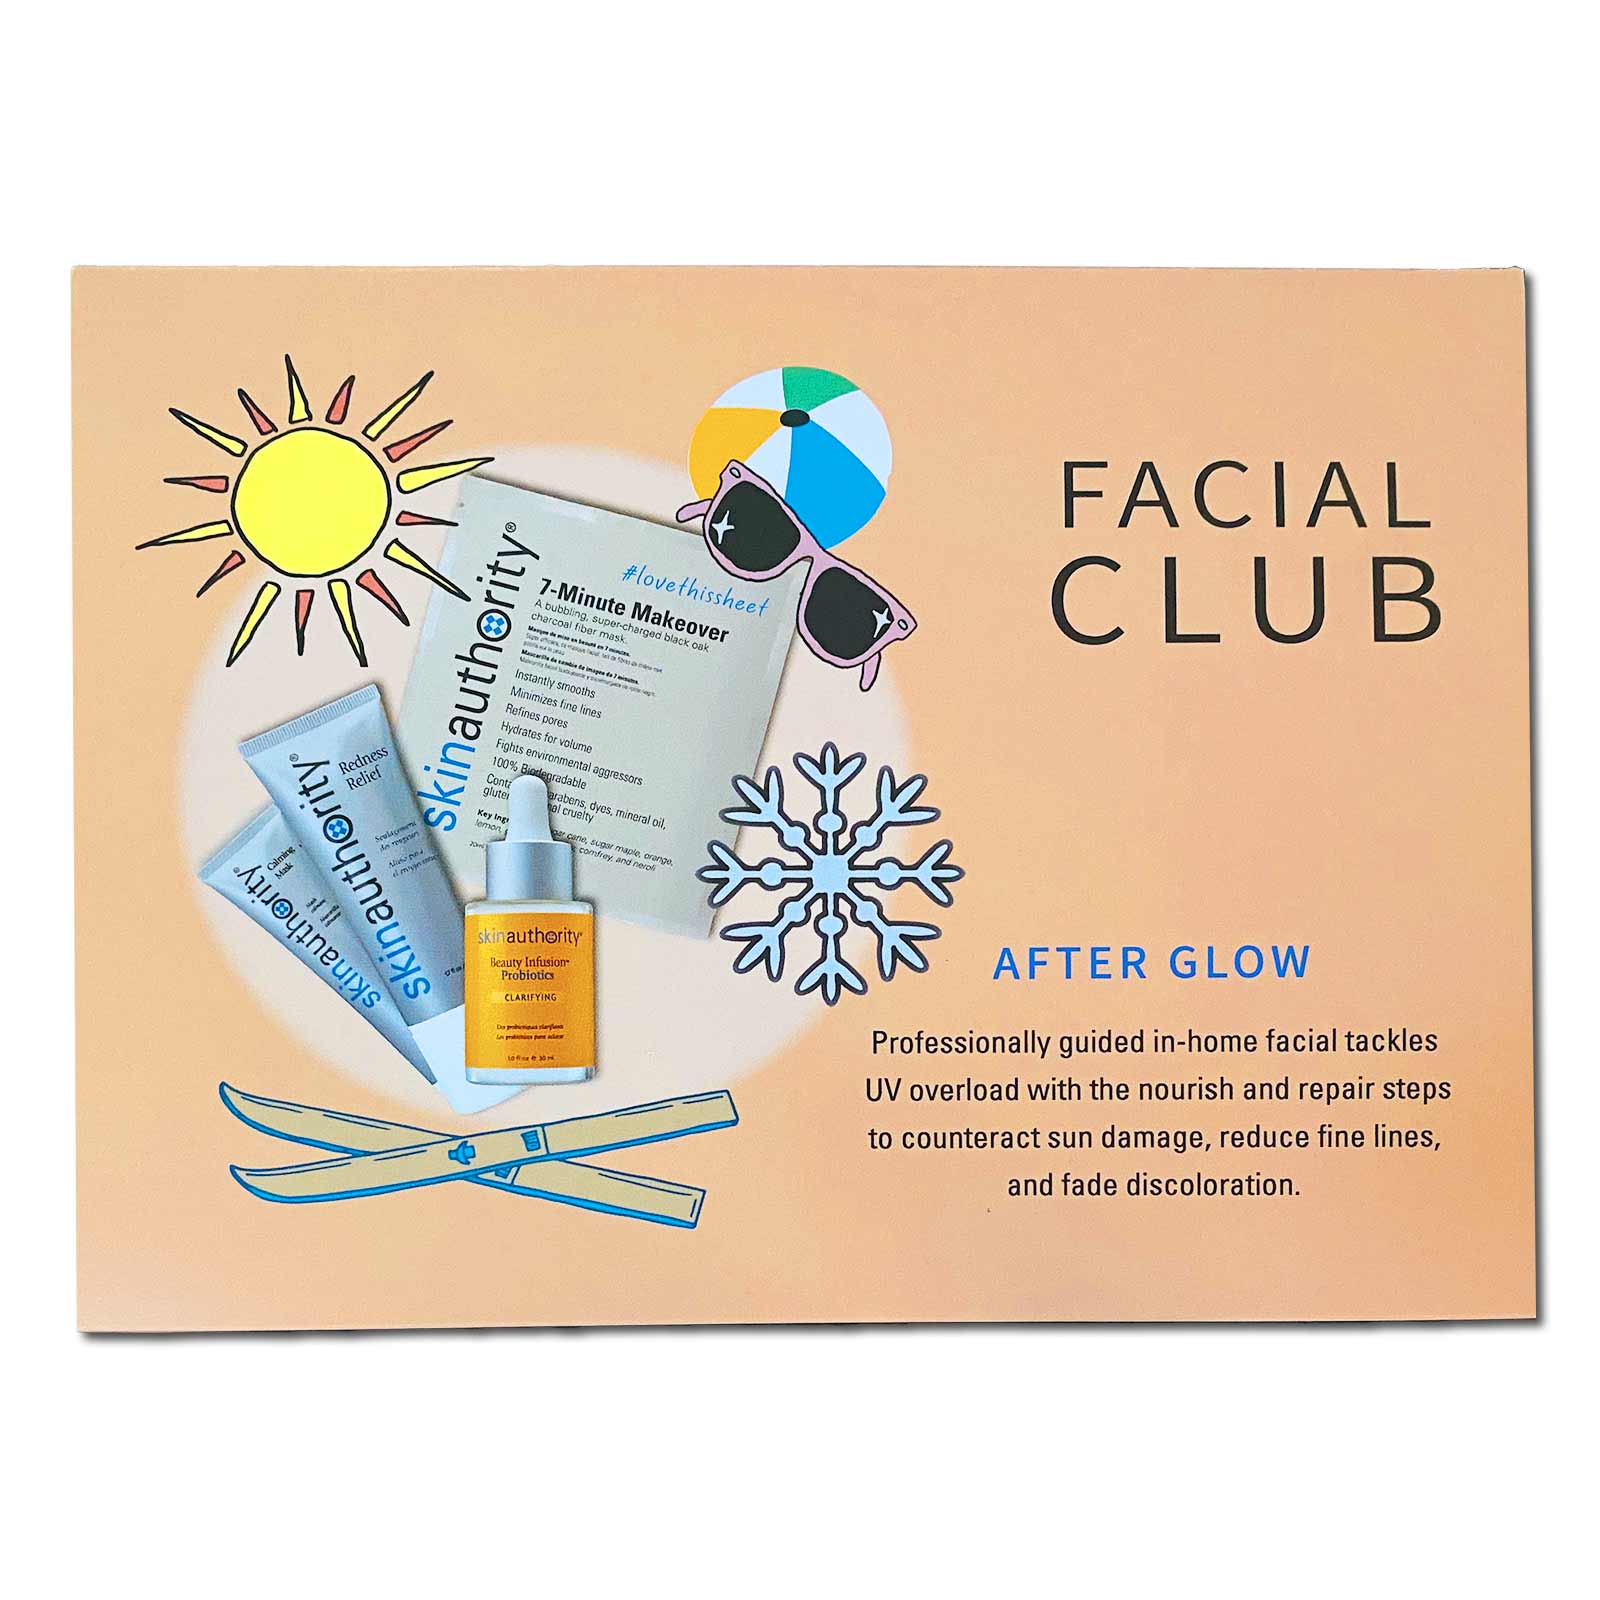 Facial Club: After Glow Kit